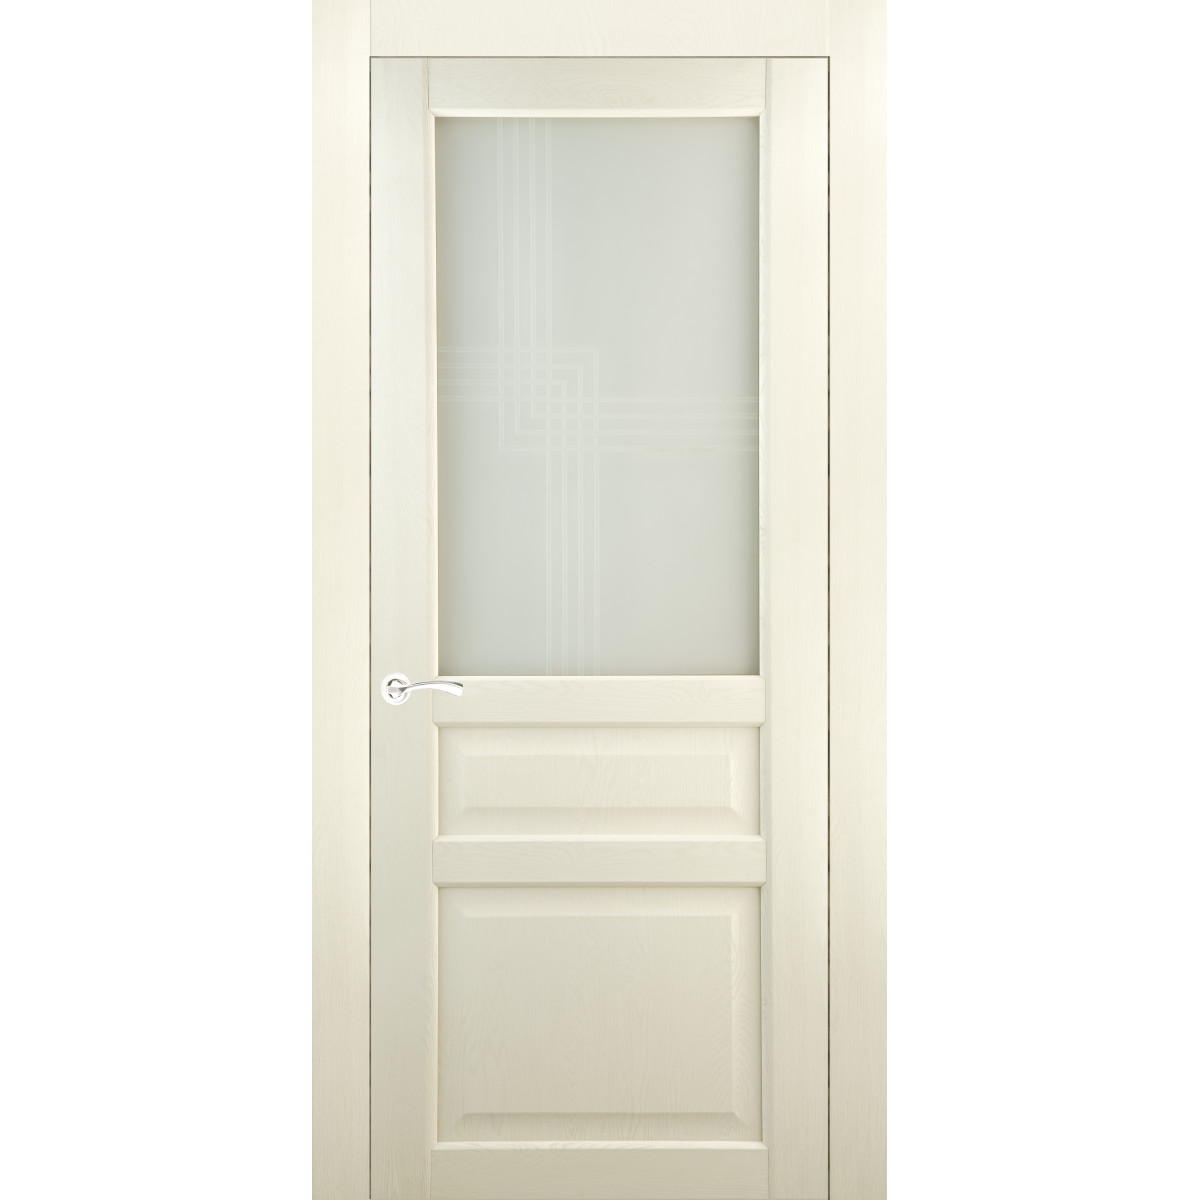 Дверь межкомнатная остеклённая Artens Мария 60x200 см, ПВХ, цвет айвори, с замком в комплекте